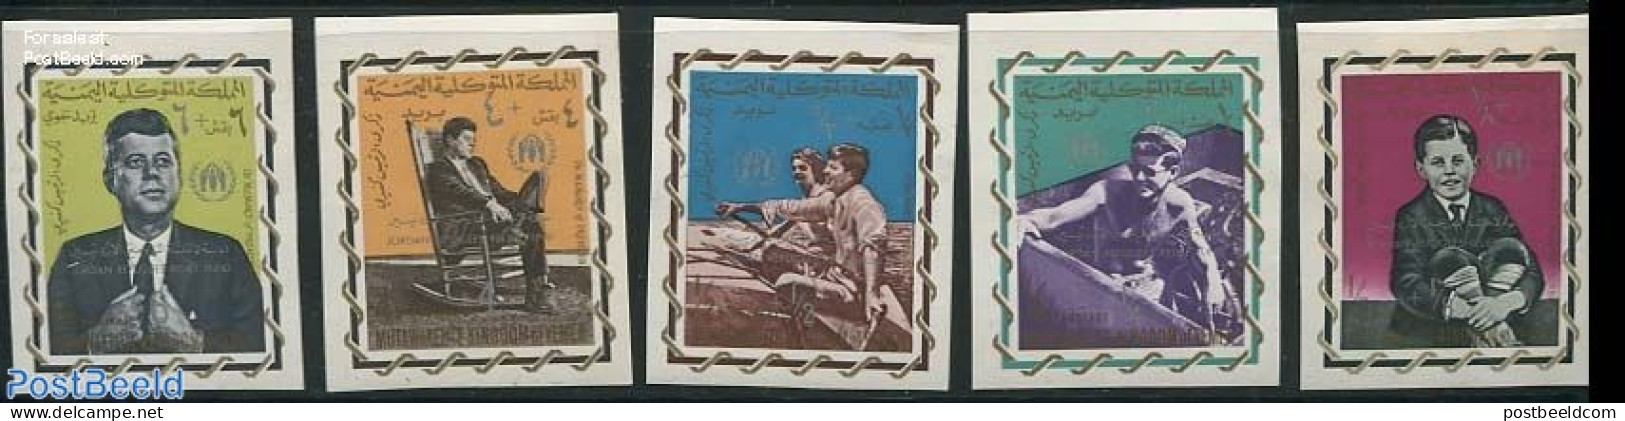 Yemen, Kingdom 1967 Refugees Overprints 5v, Imperforated, Mint NH, History - Transport - American Presidents - Refugee.. - Refugees